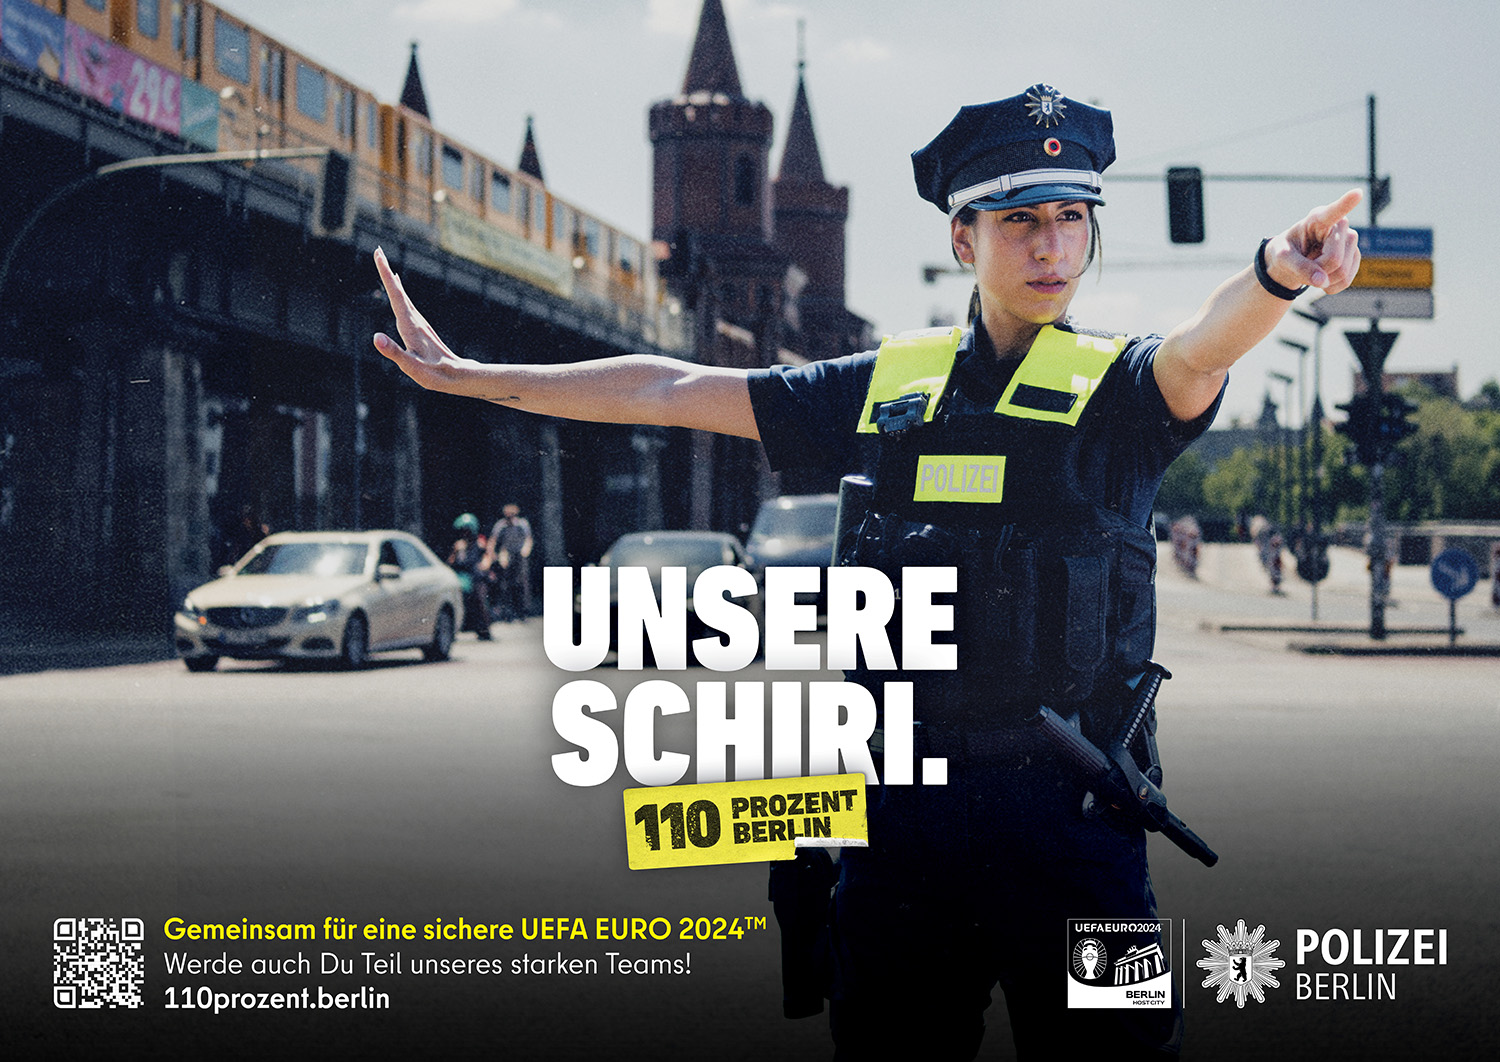 Polizei Berlin - Unsere Schiri